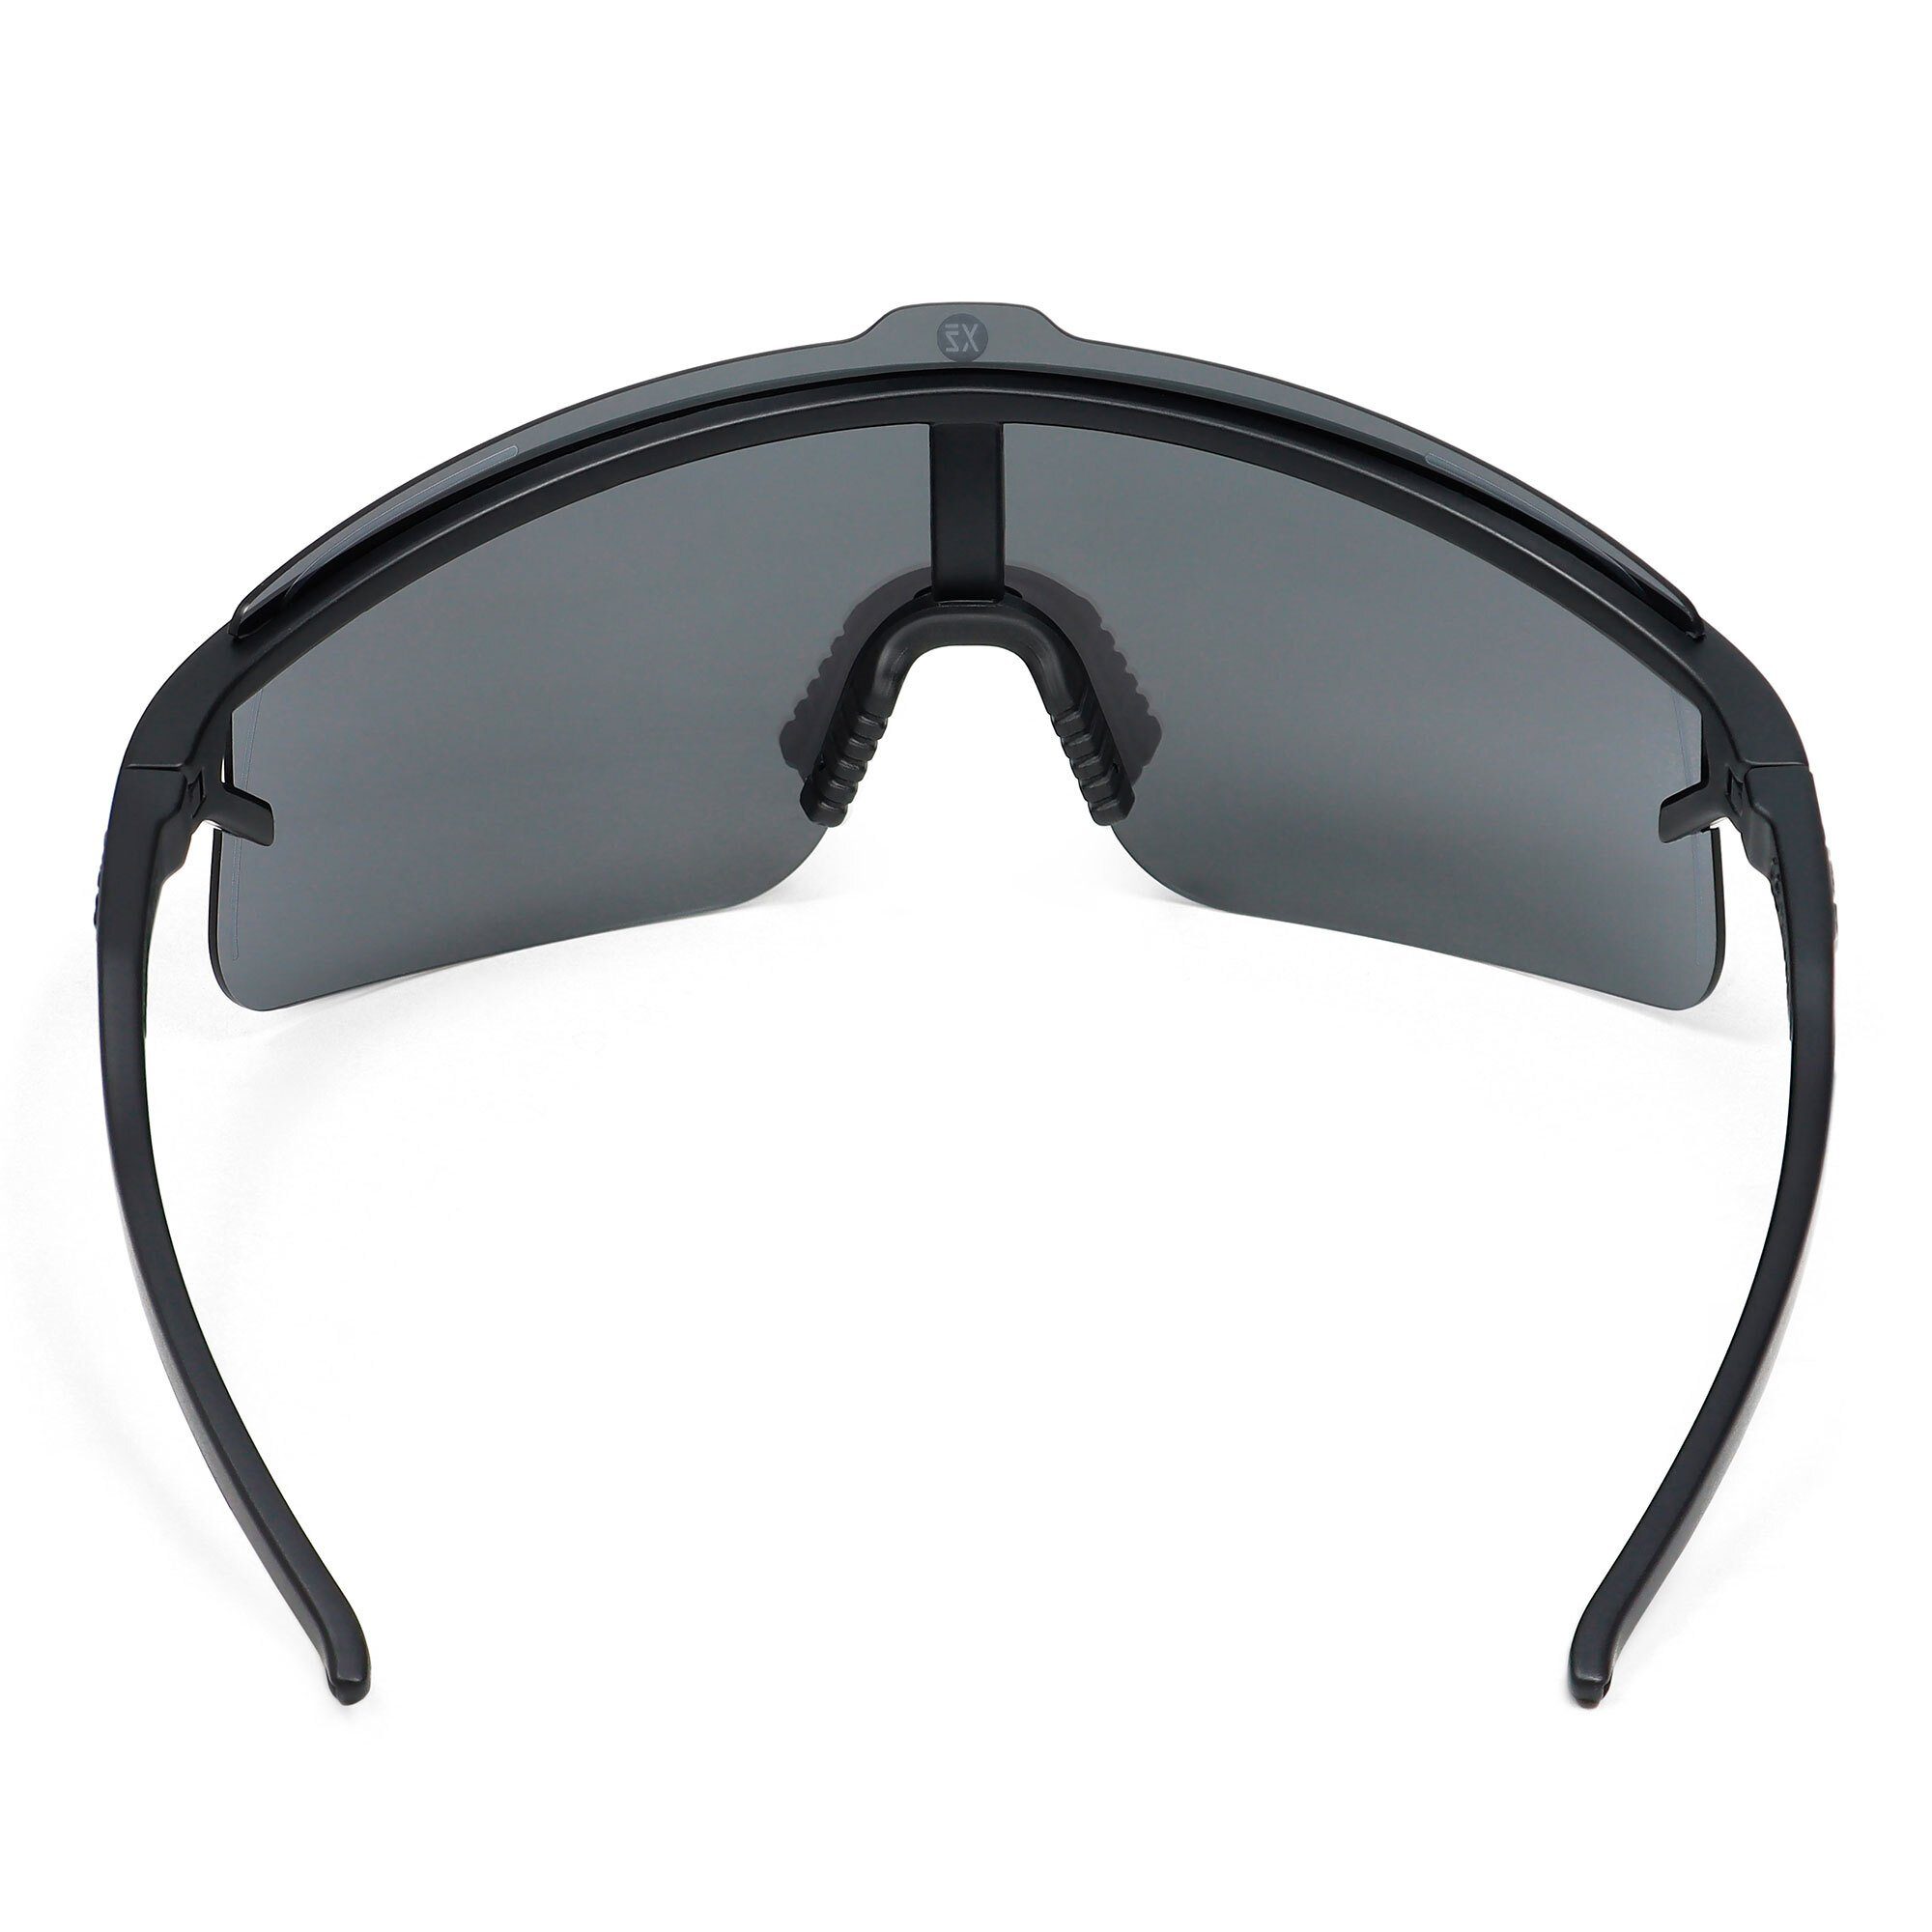 YEAZ Sportbrille SUNSHADE sport-sonnenbrille schwarz Komfort / silber und Style Sicht, black/silver, perfekte Erlebe